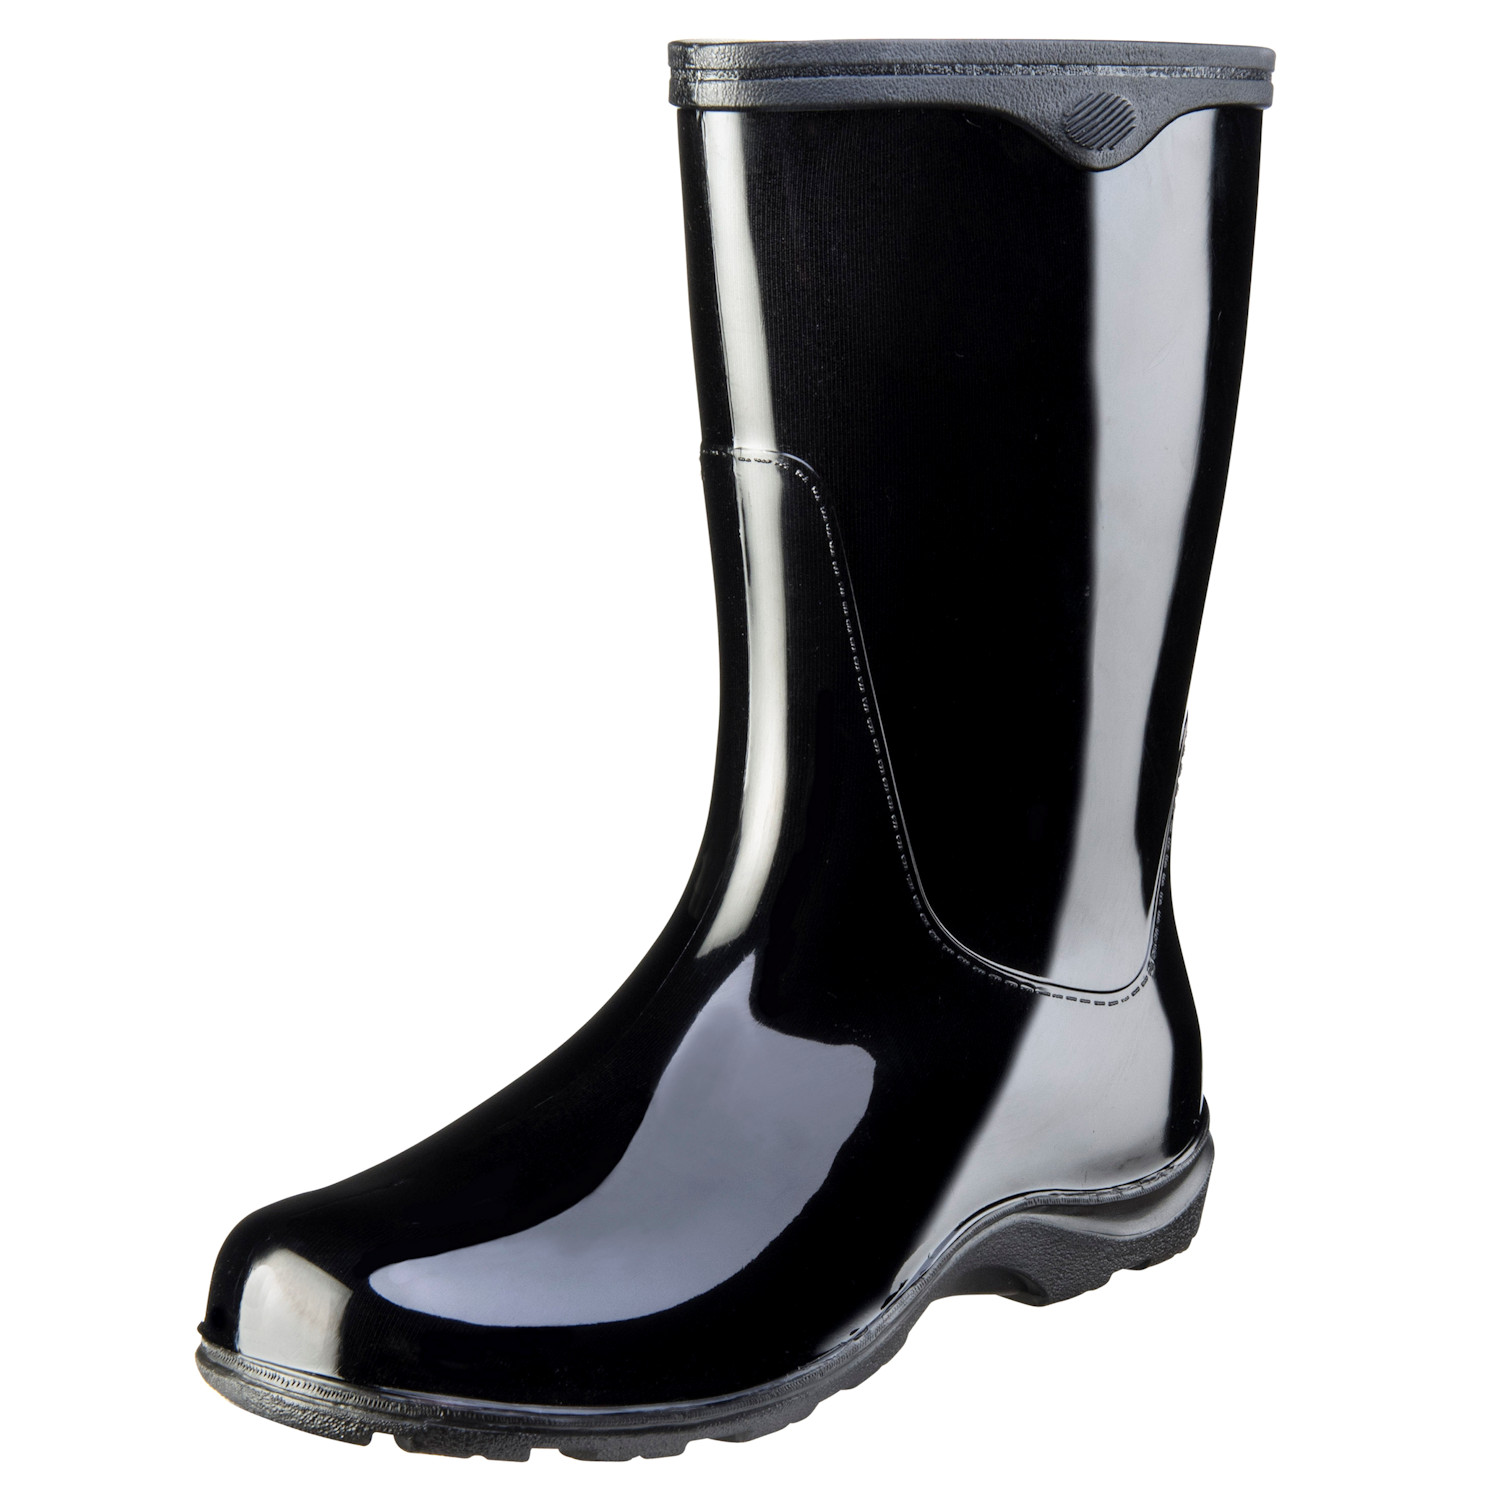 Waterproof Rain and Gardening Boots 